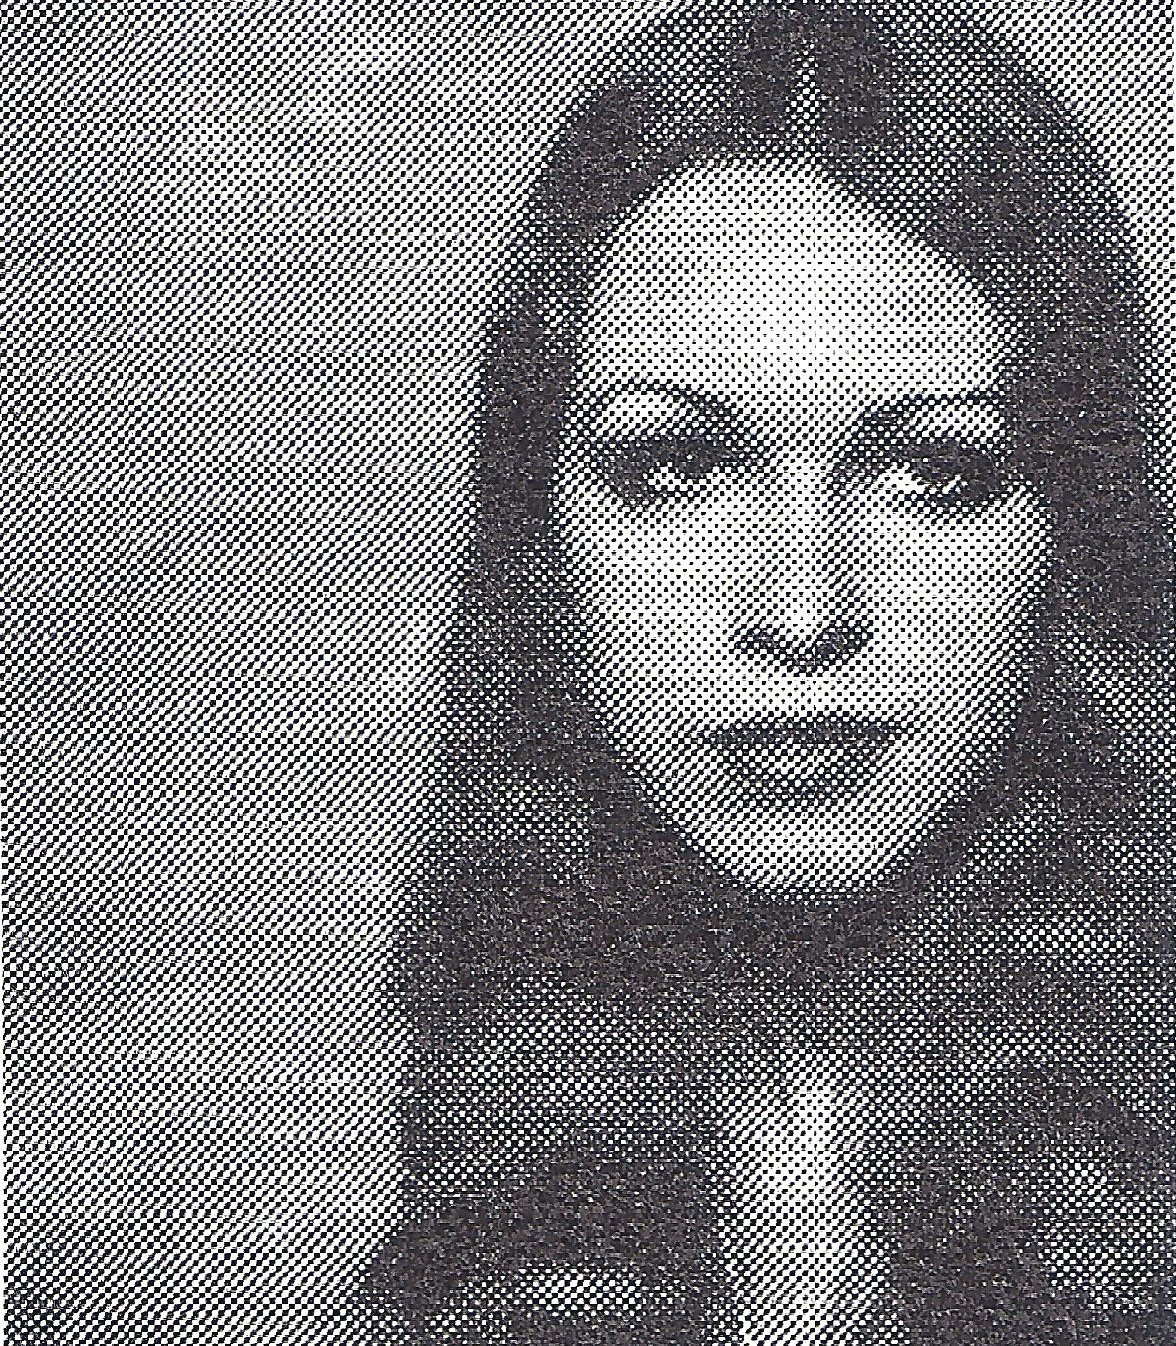 Kara Hoffman